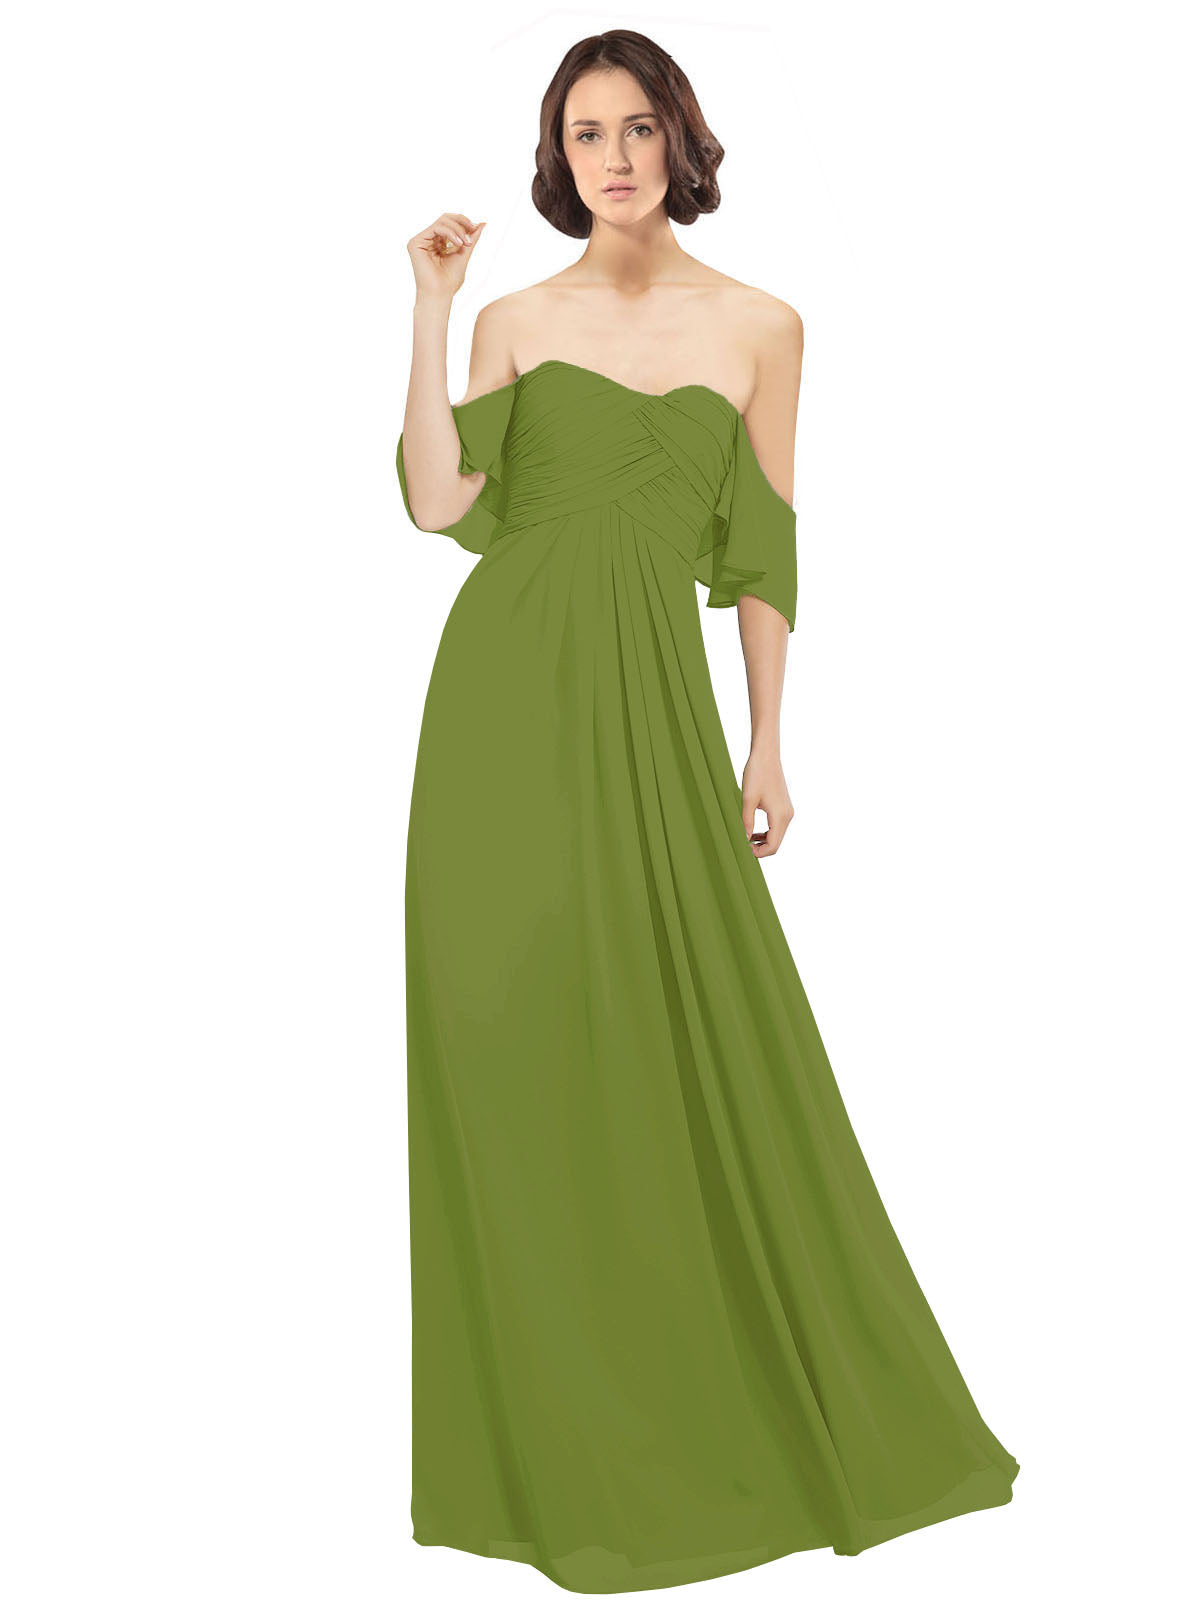 Olive Green A-Line Off the Shoulder Off the Shoulder Long Bridesmaid Dress Katherine